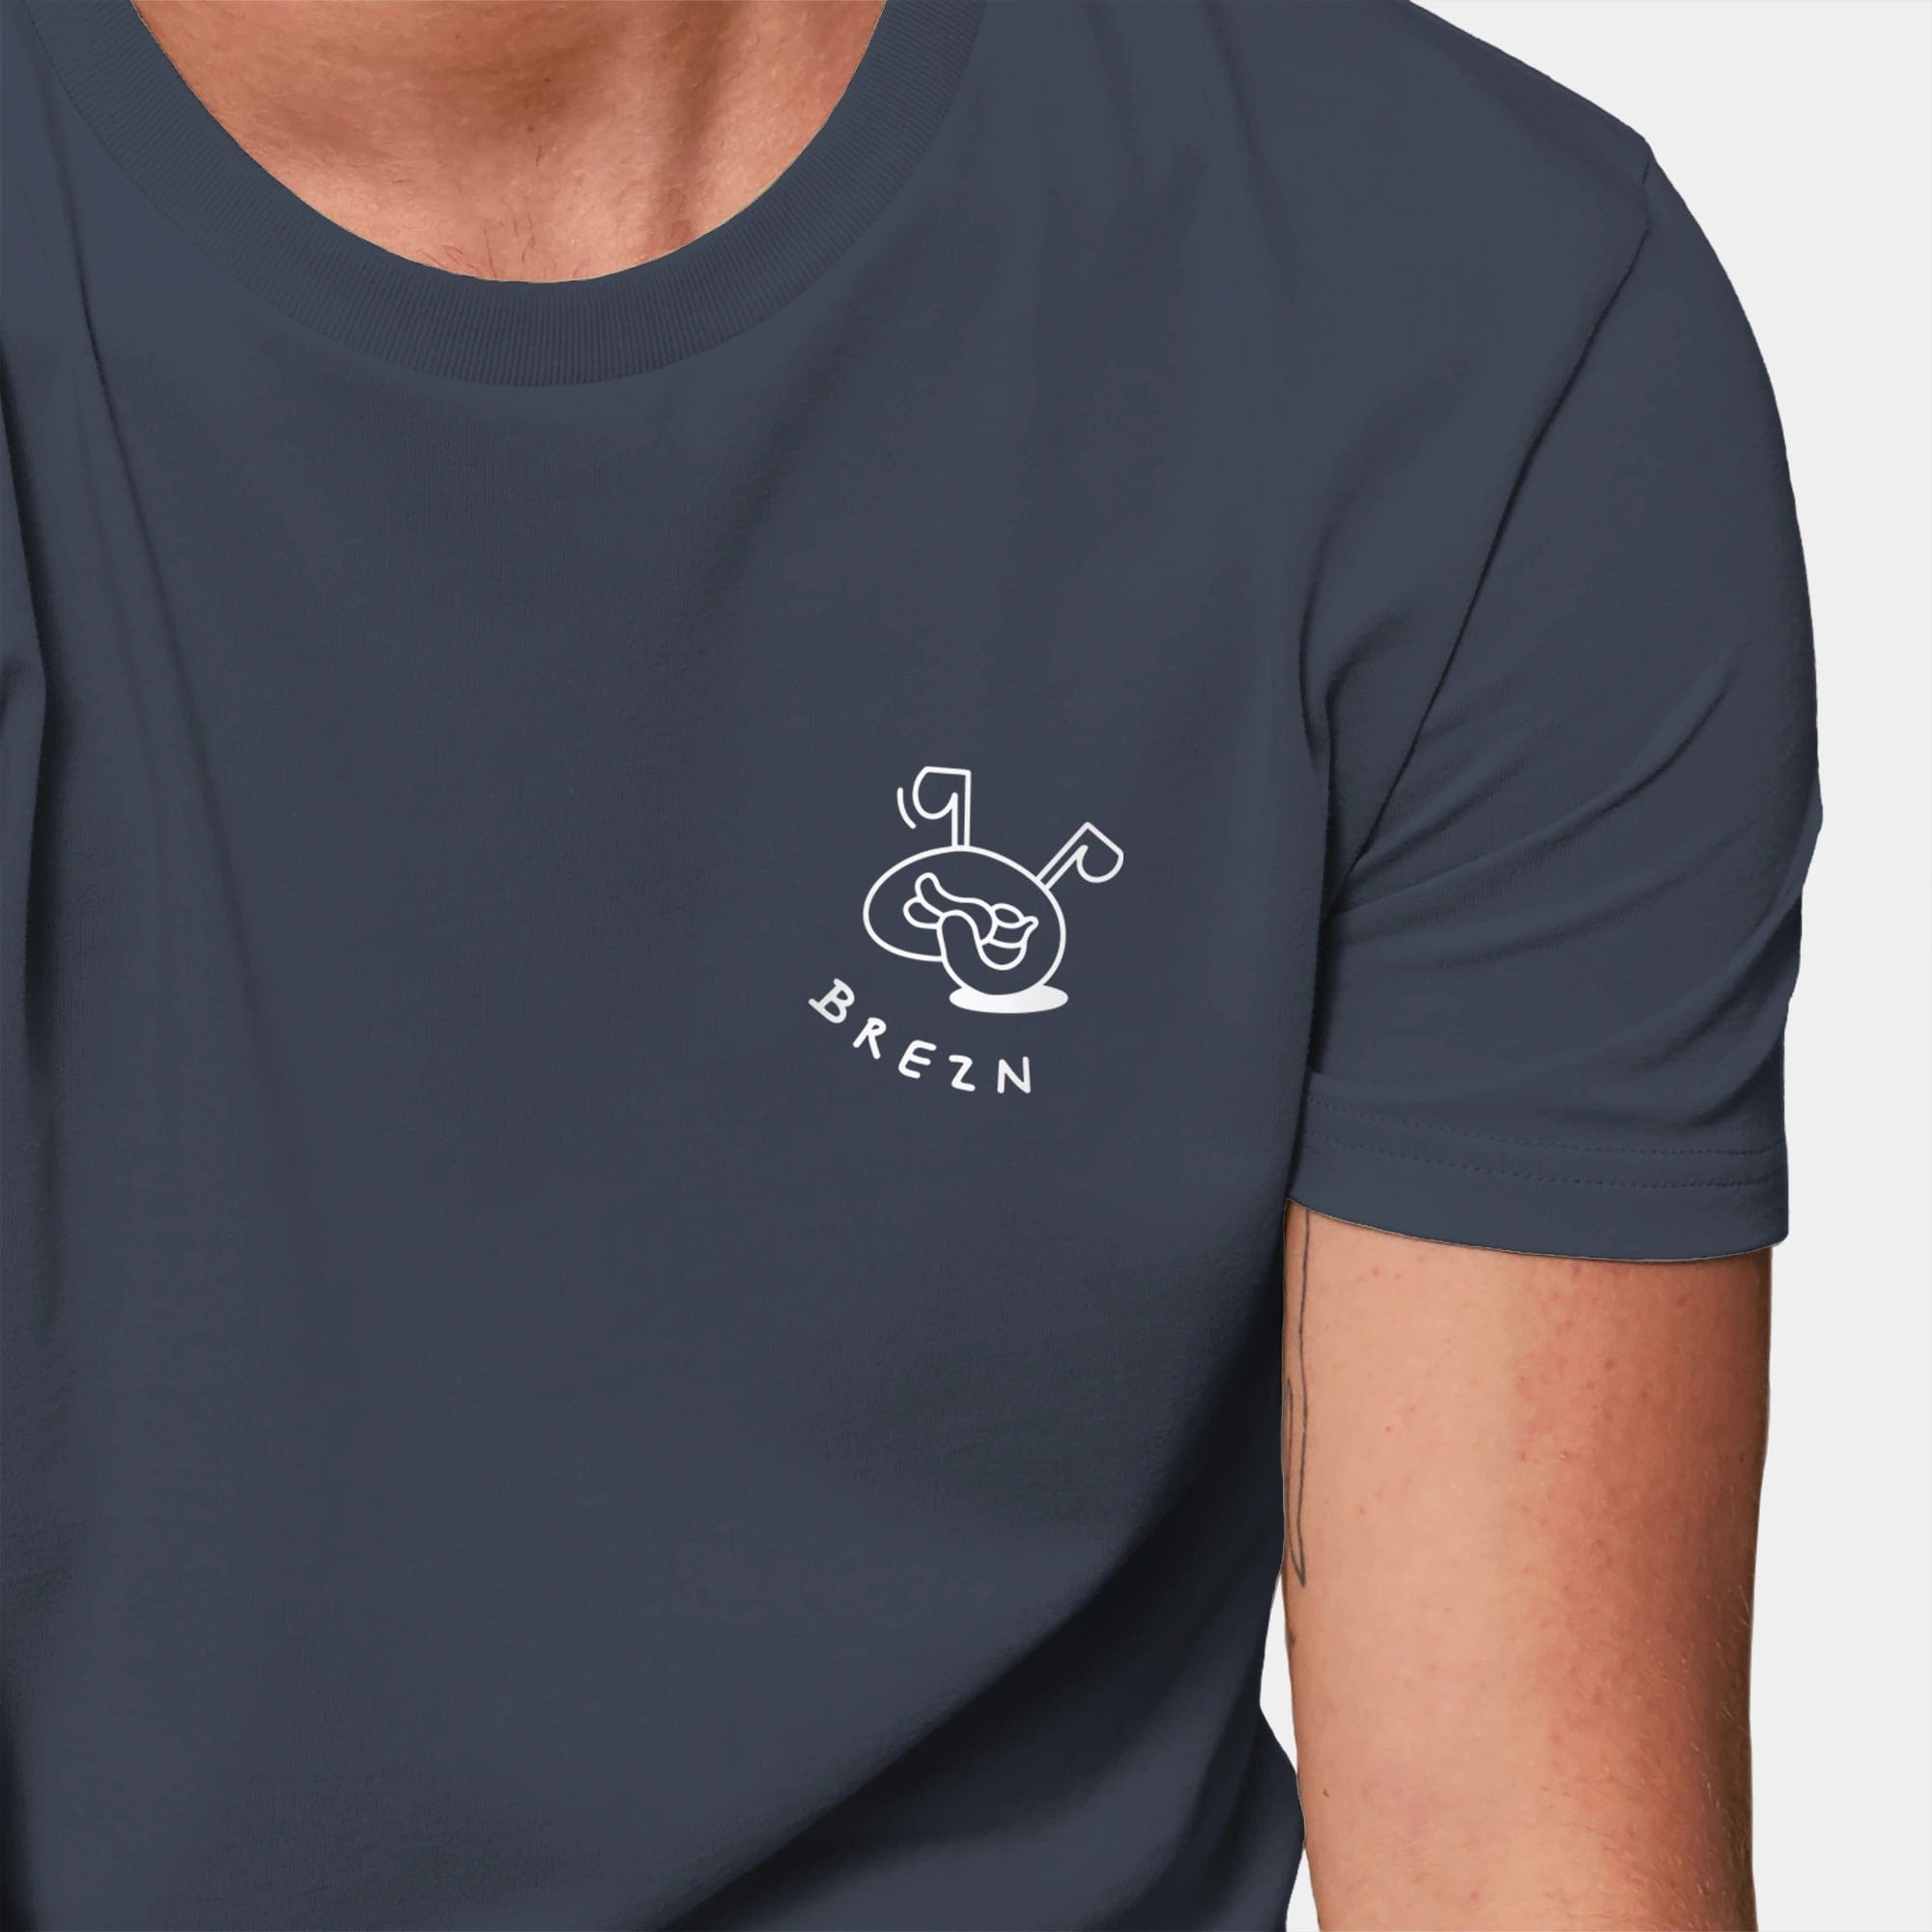 HEITER & LÄSSIG T-Shirt ORIGINAL "Brezn" XXS / india ink grey - aus nachhaltiger und fairer Produktion